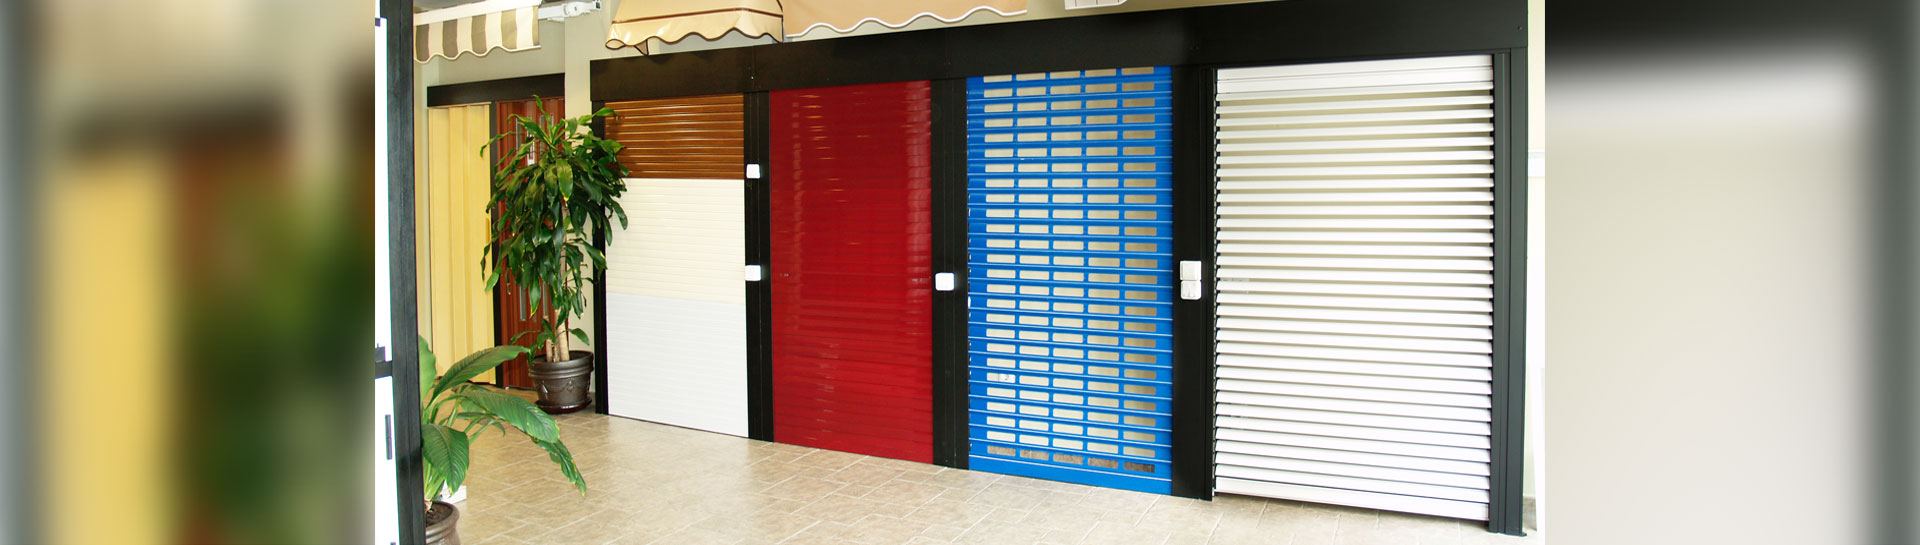 Variedad de persianas de seguridad en diferentes colores mostradas en una exposición comercial.